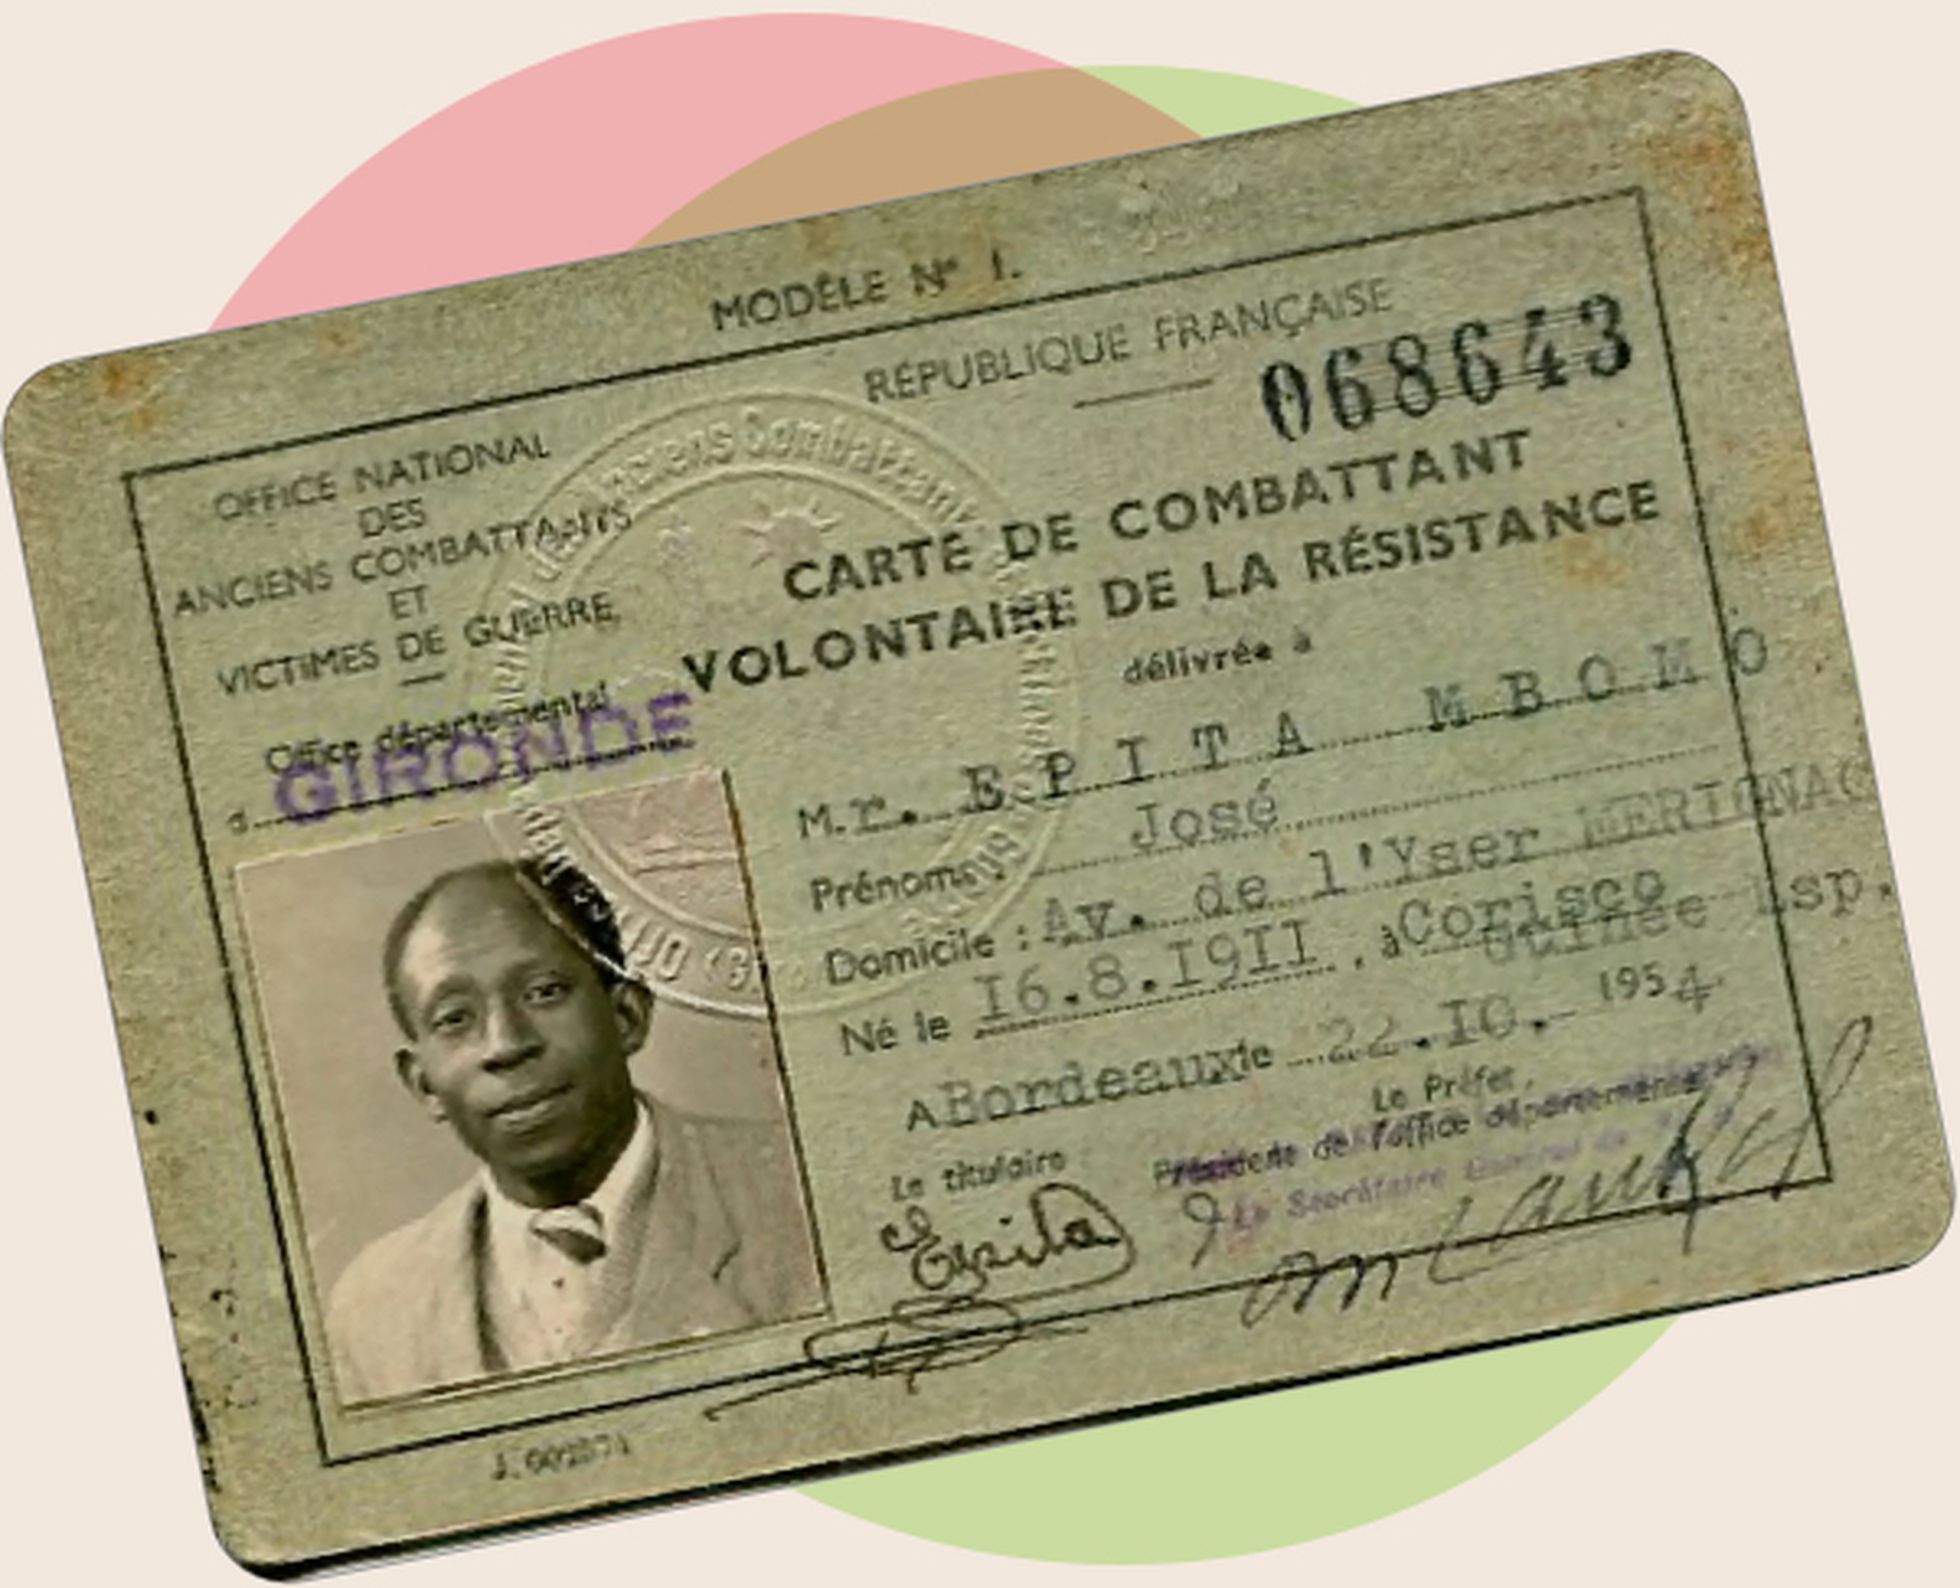 Carné de voluntario de la Resistencia de José Epita Mbomo emitido en Burdeos en 1954.